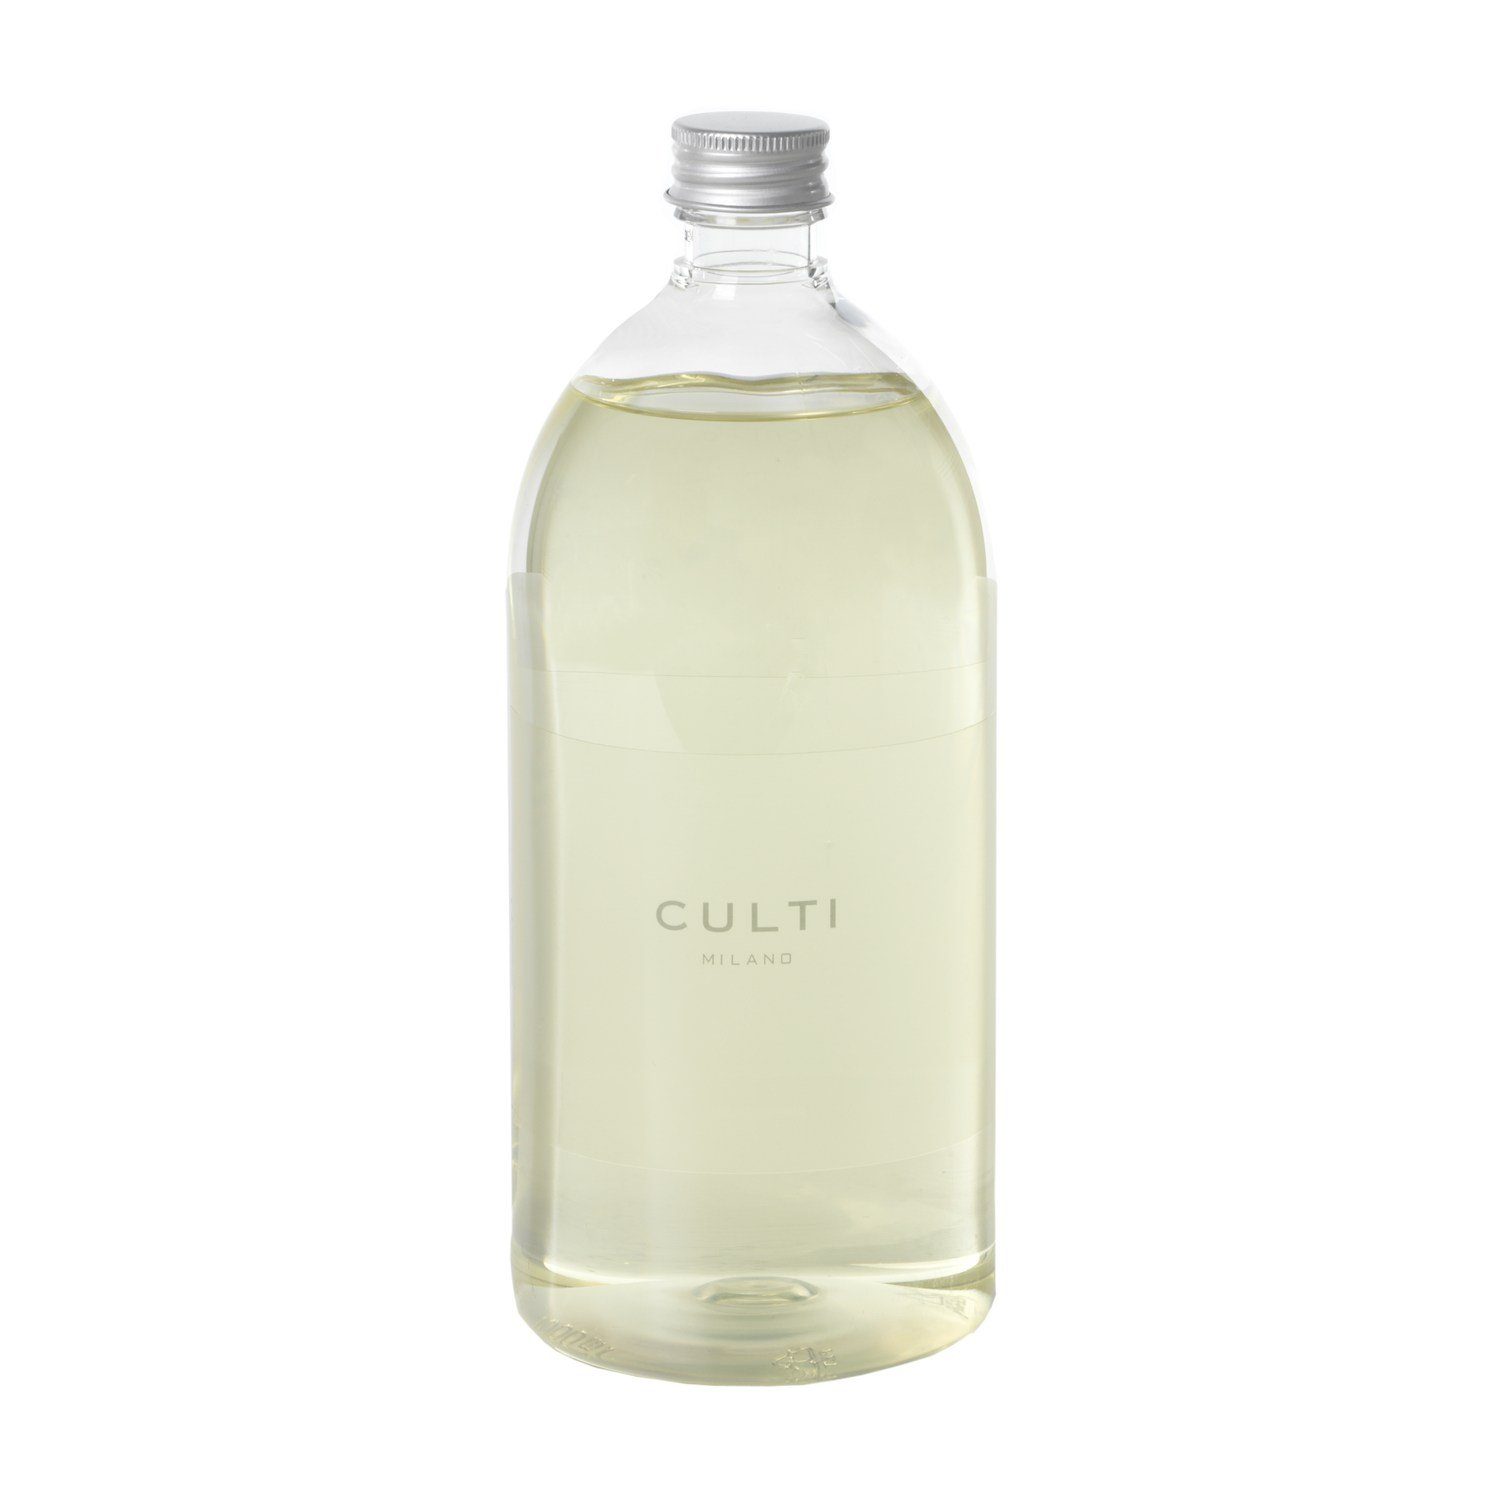 Culti Milano Raumduft-Nachfüllflasche Acqua 1000 ml